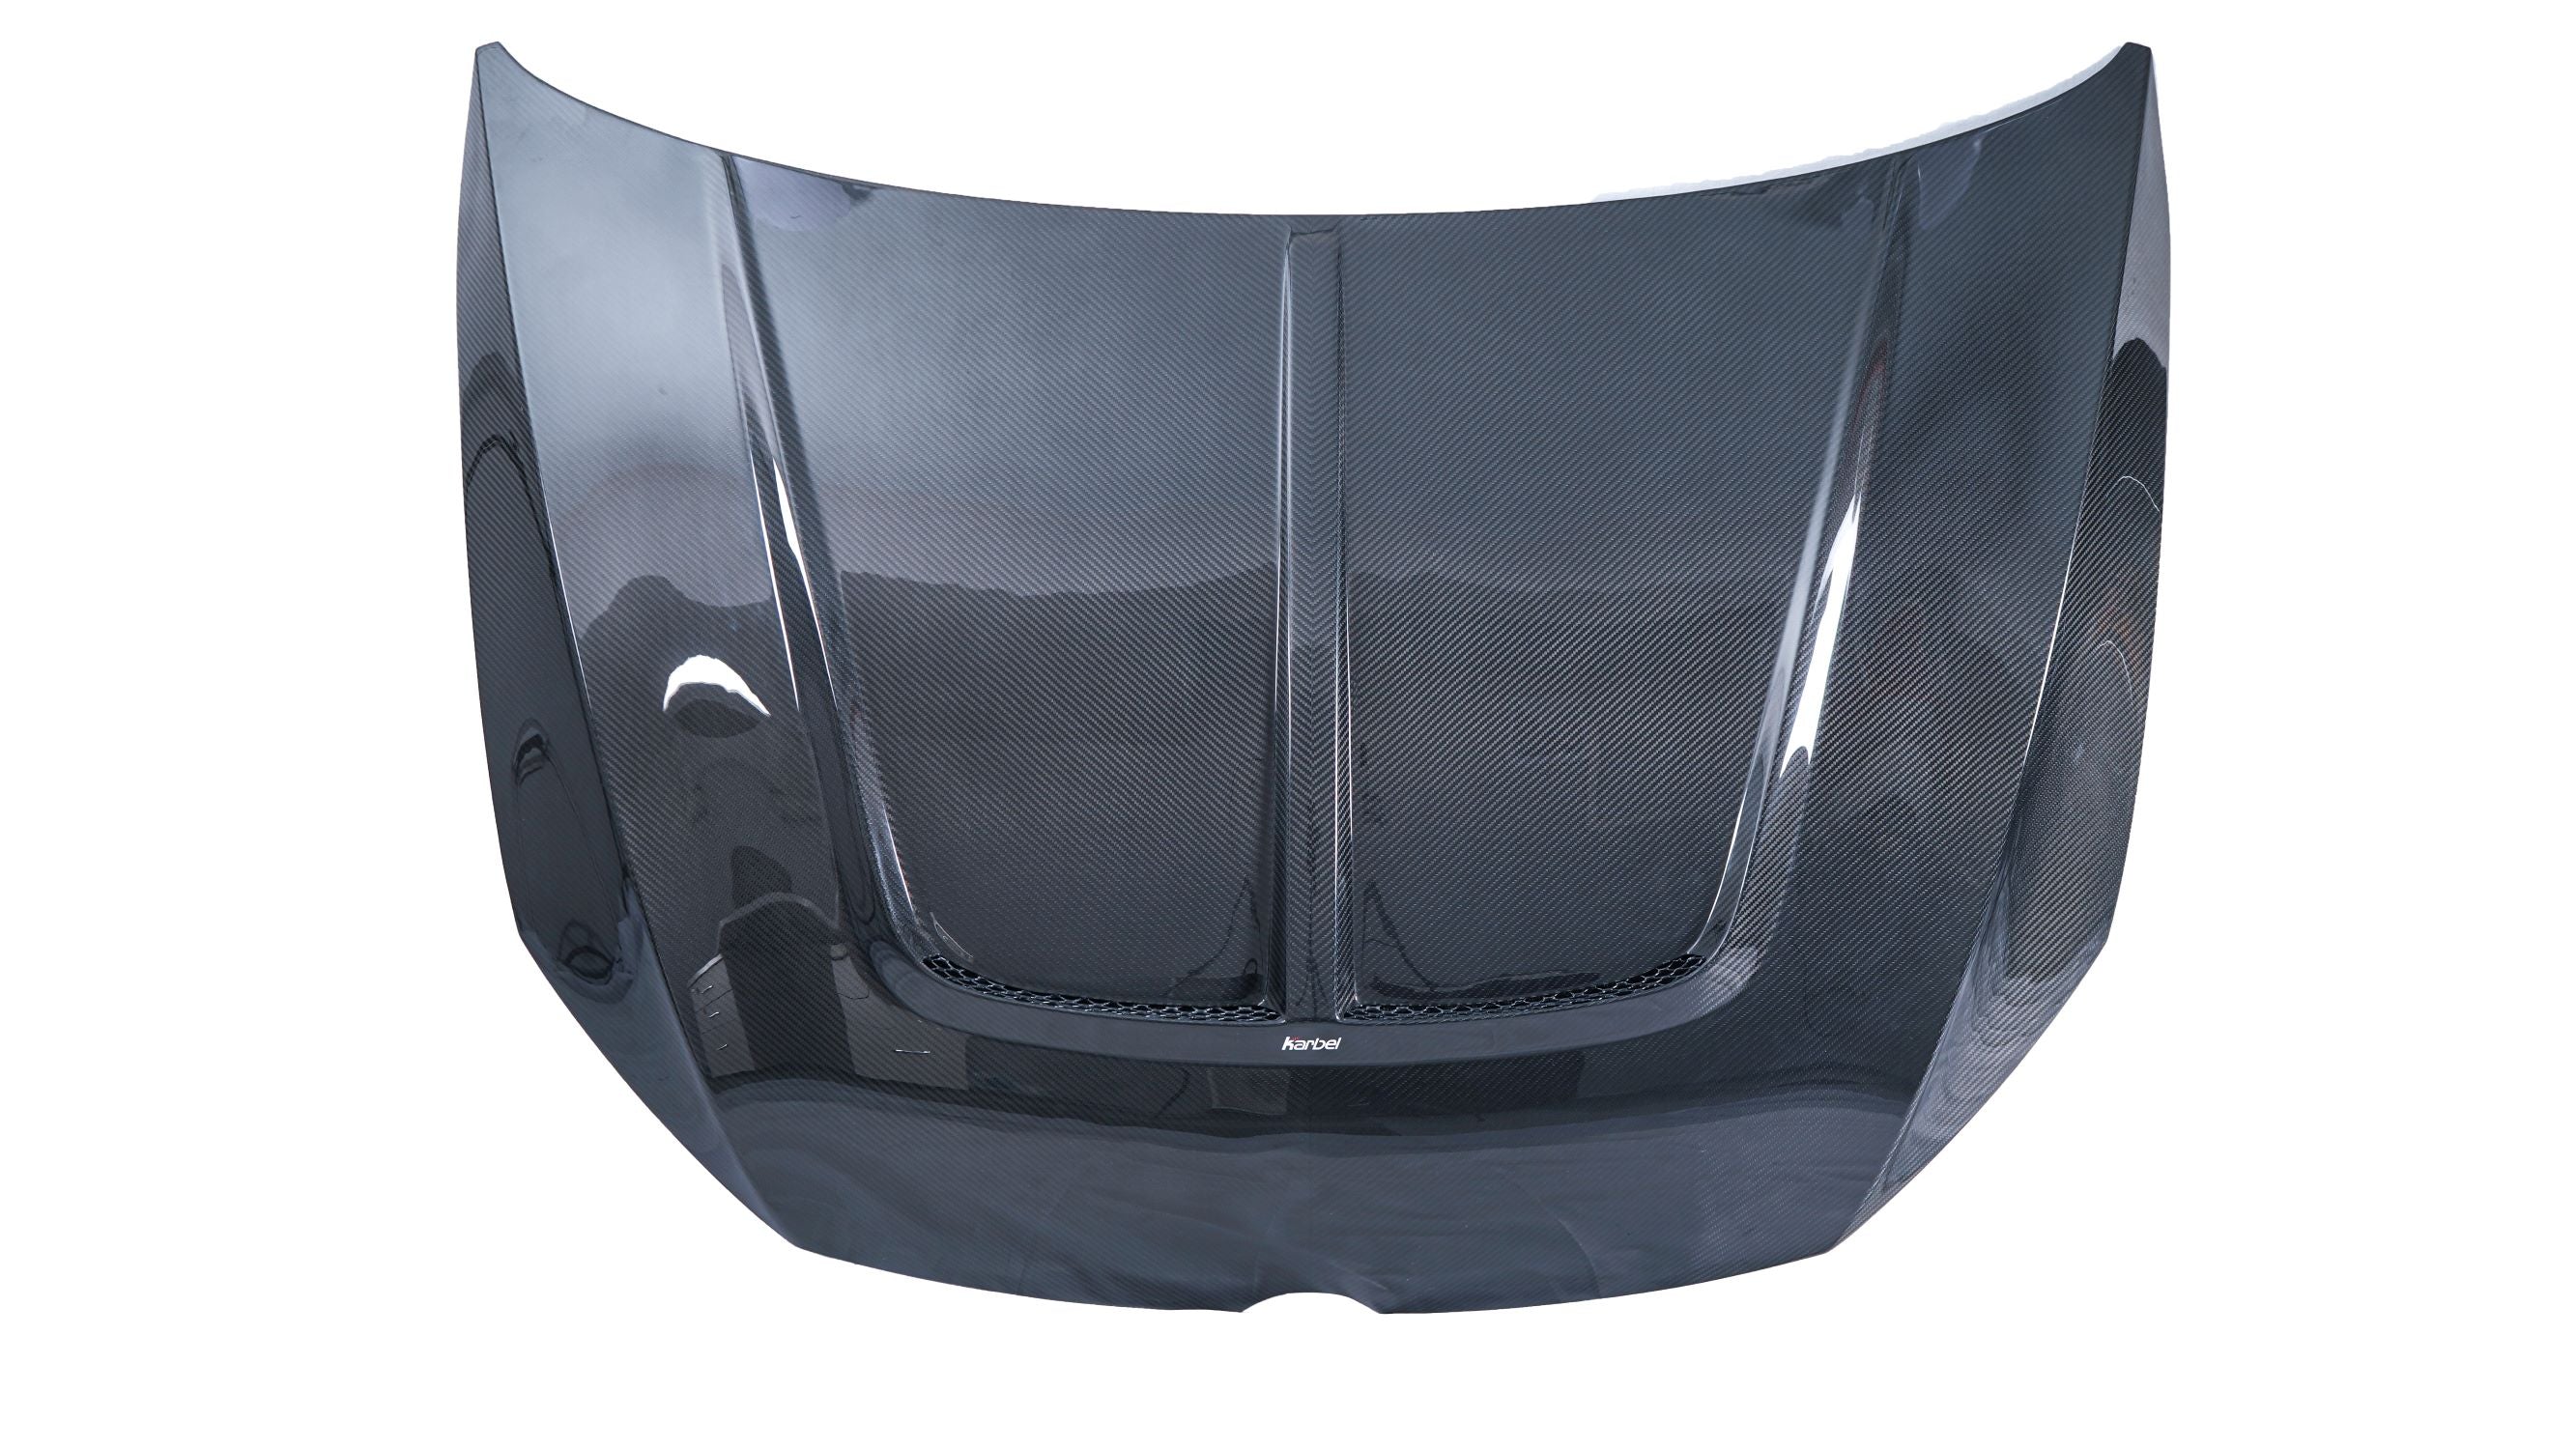 Karbel Carbon Dry Carbon Fiber Double-sided Hood Bonnet for Volkswagen Golf & GTI & Golf R MK7.5 MK7